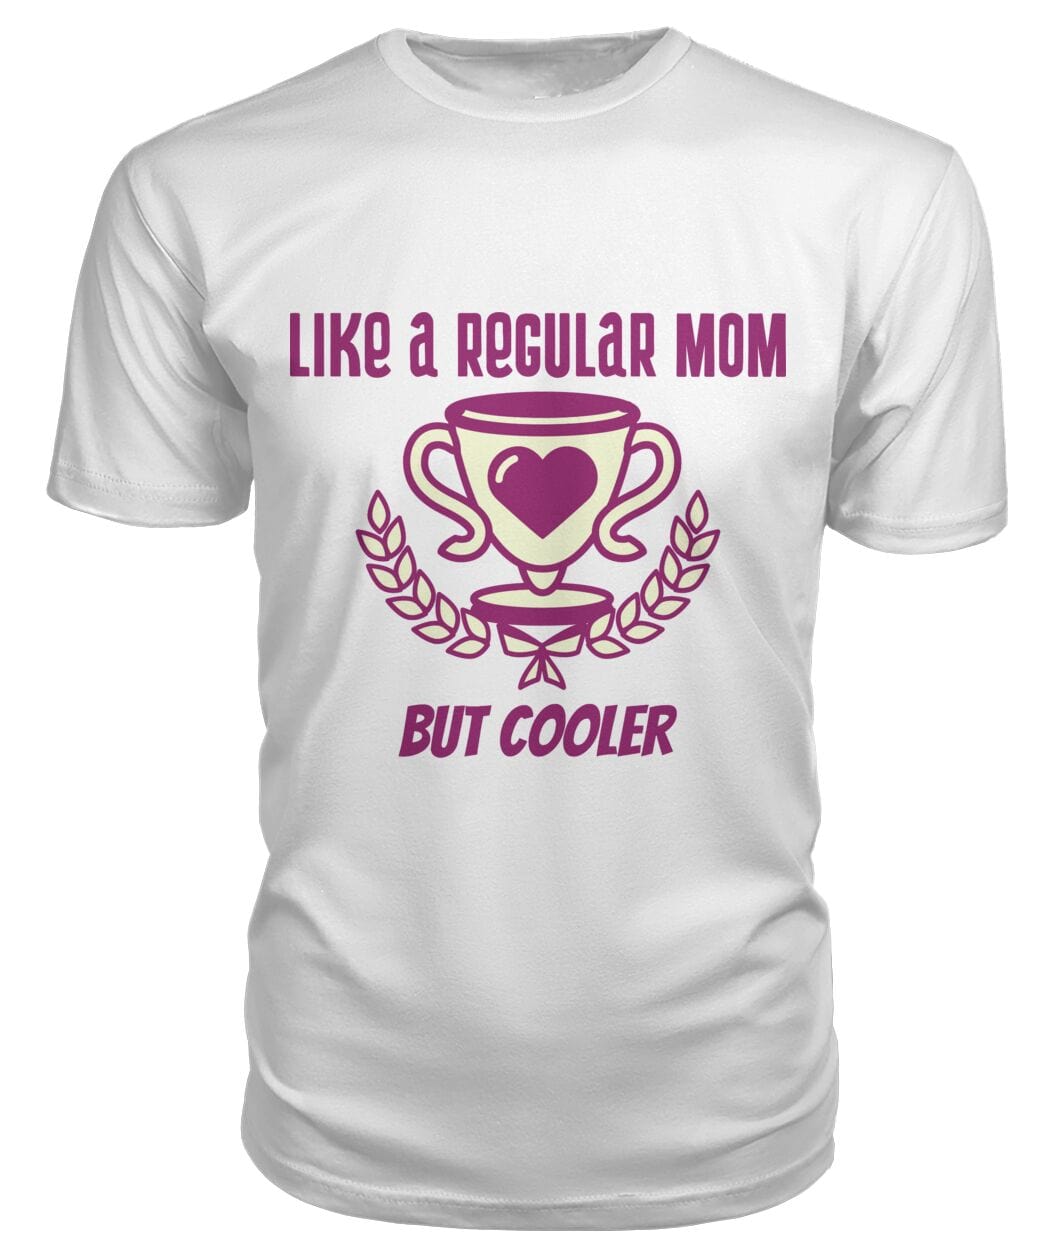 Cooler mom